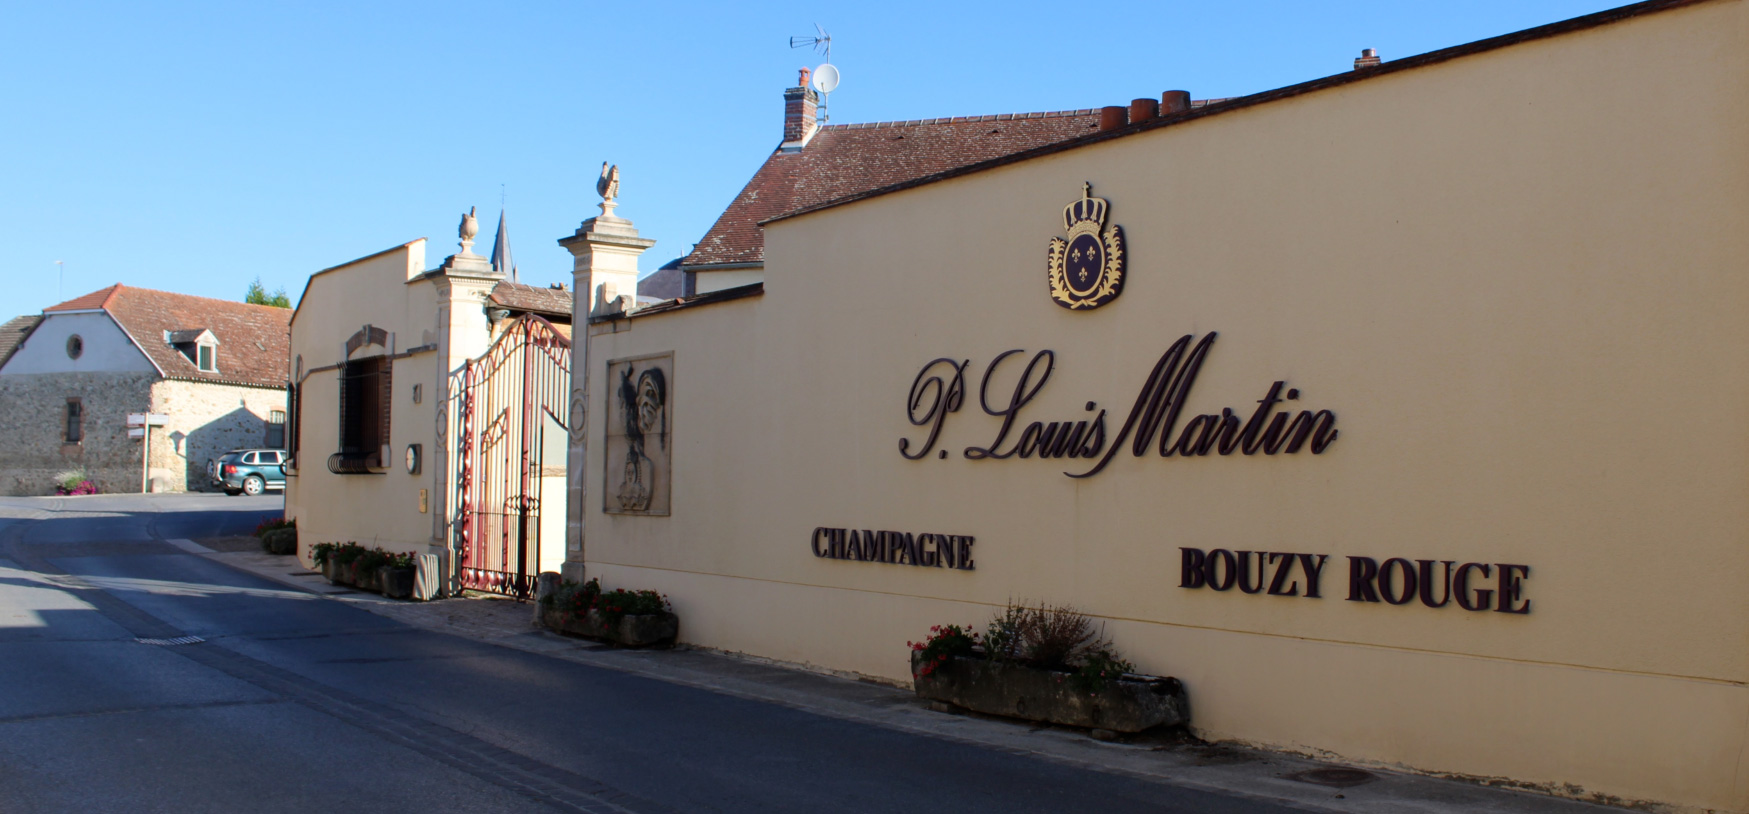 Vue sur l'entrèe de la maison du Champagne Paul Louis Martin